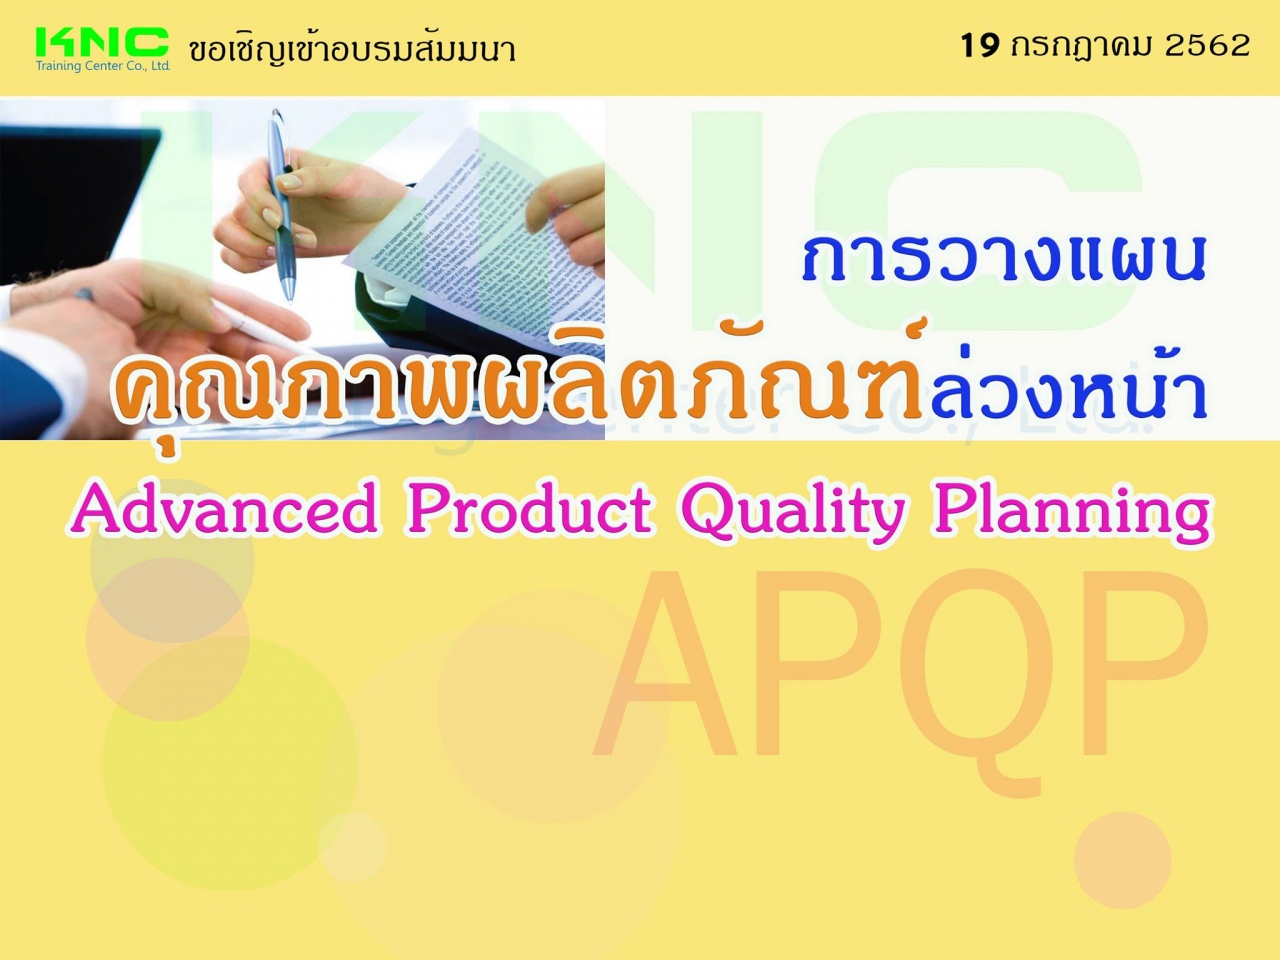 การวางแผนคุณภาพผลิตภัณฑ์ล่วงหน้า Advance Product Quality Planning (APQP)